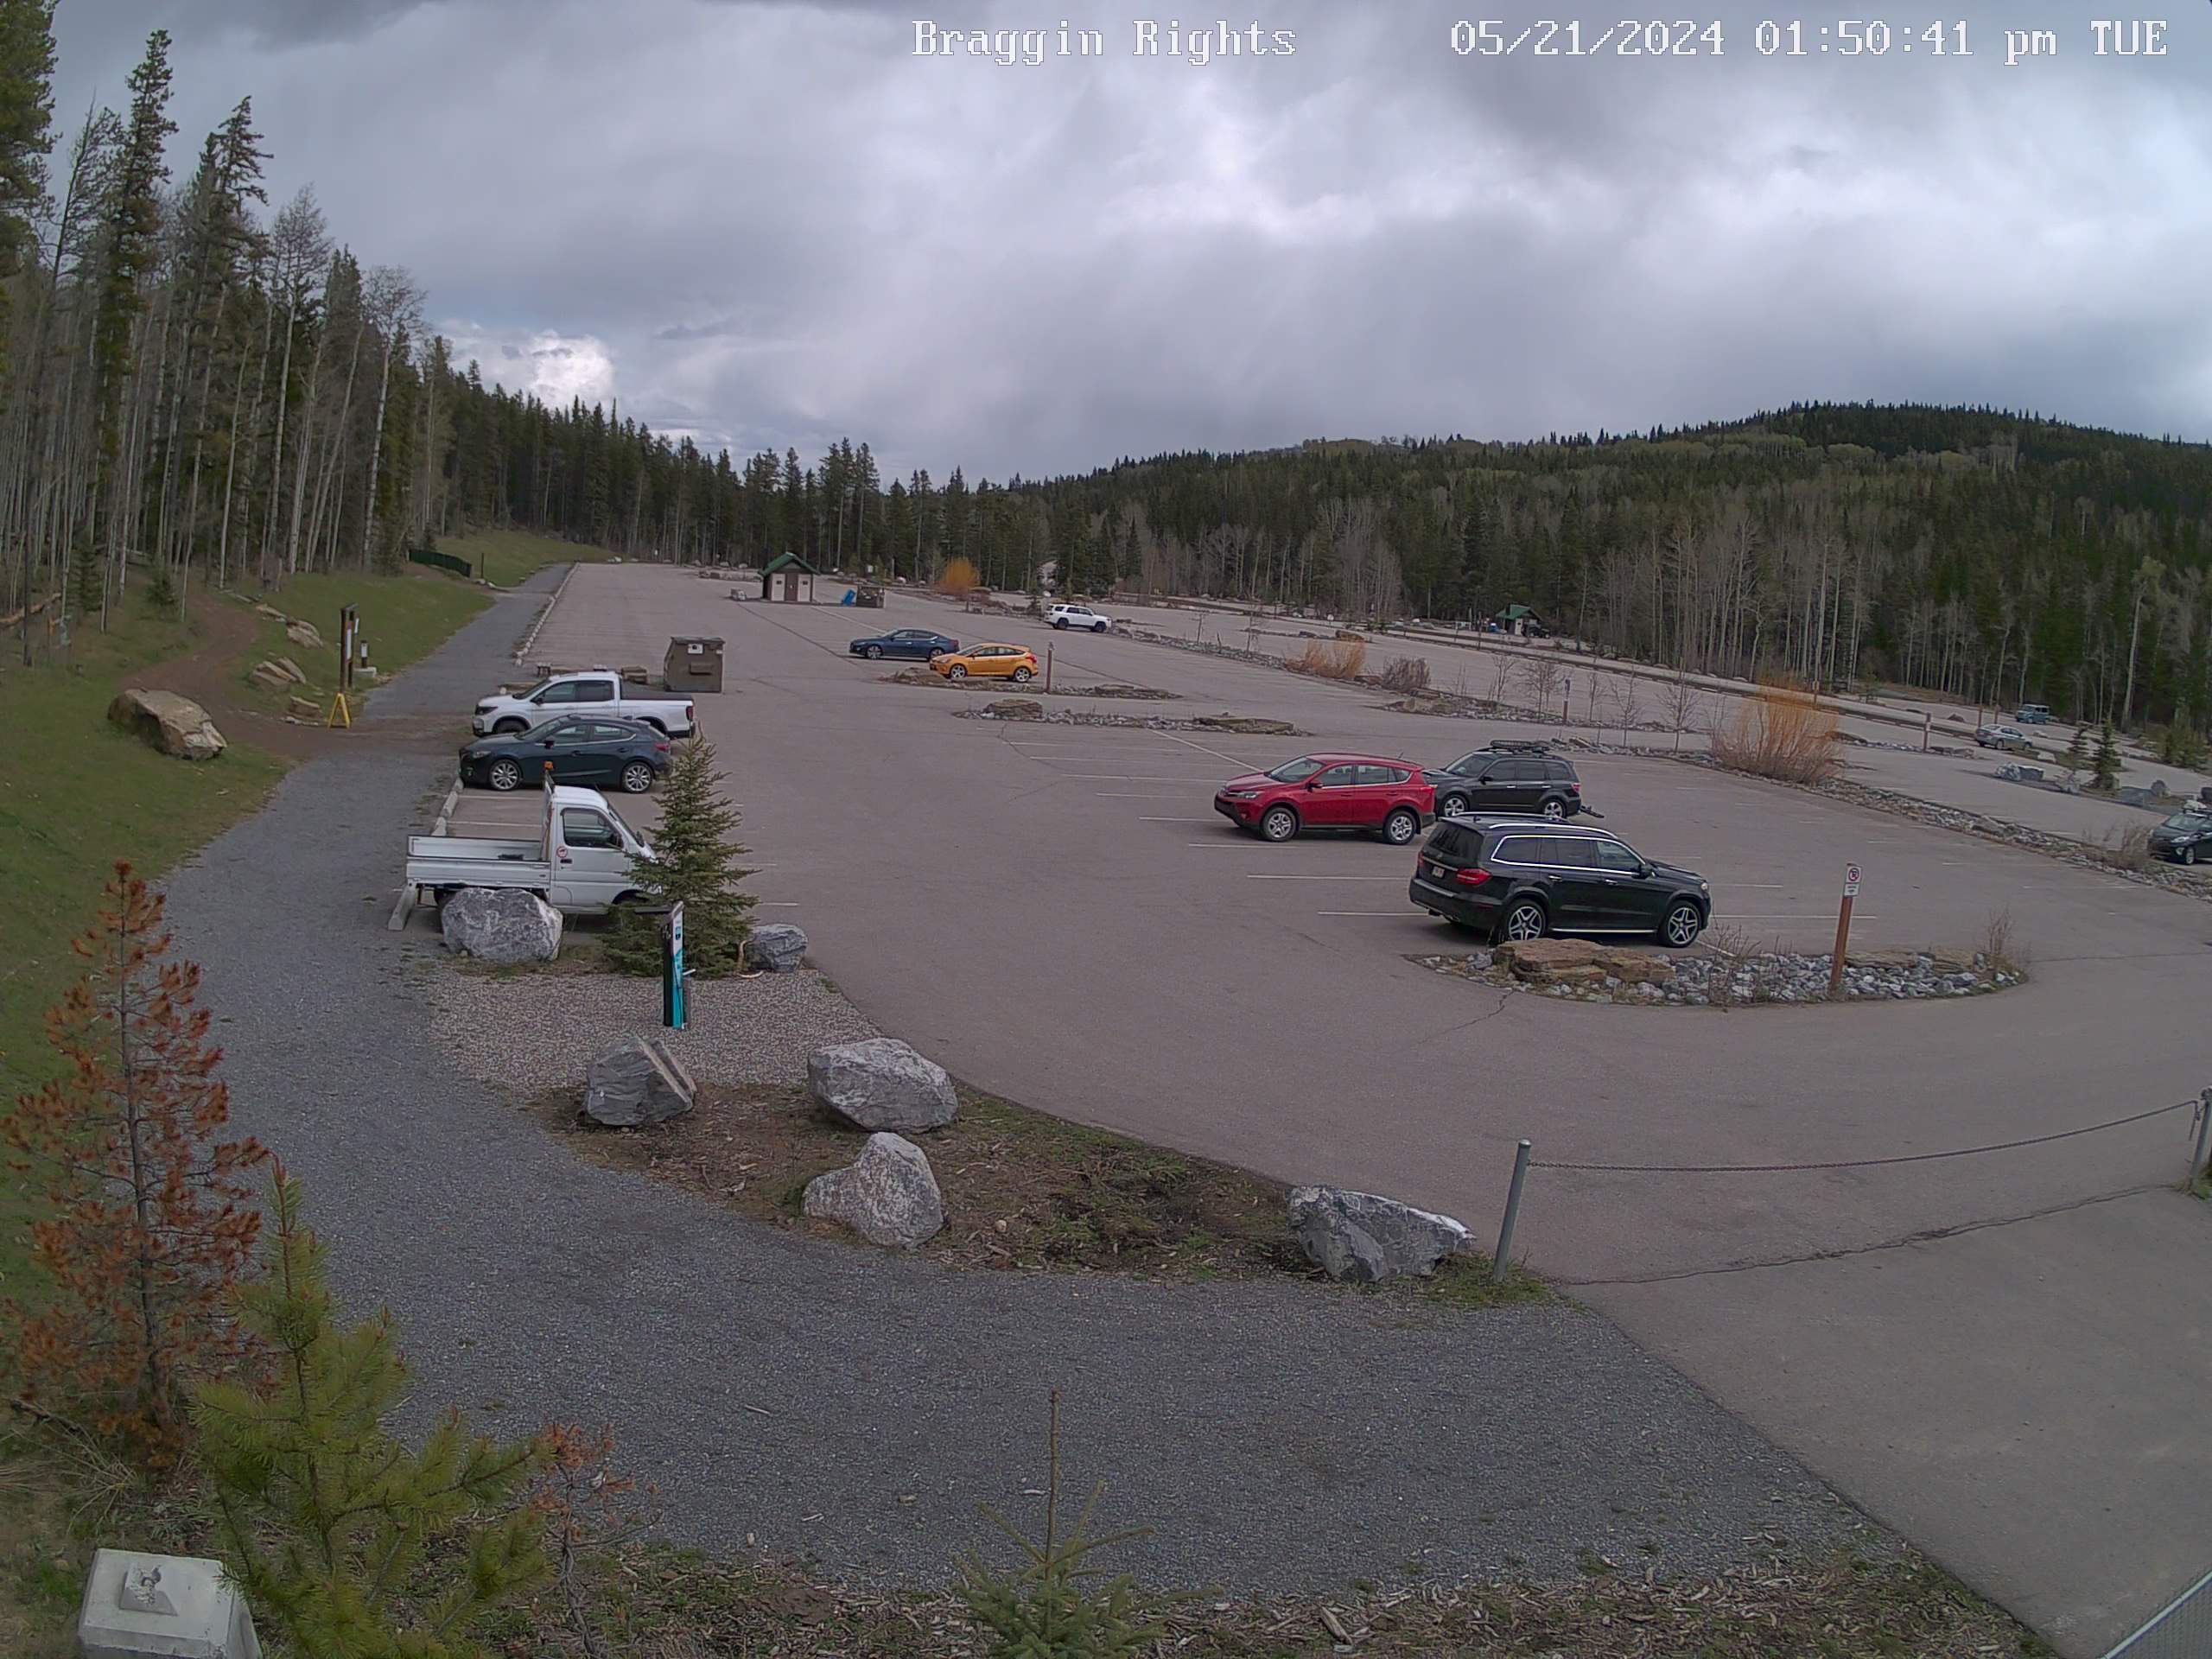 Canada Calgary Bragg Creek Trails Parking live webcam